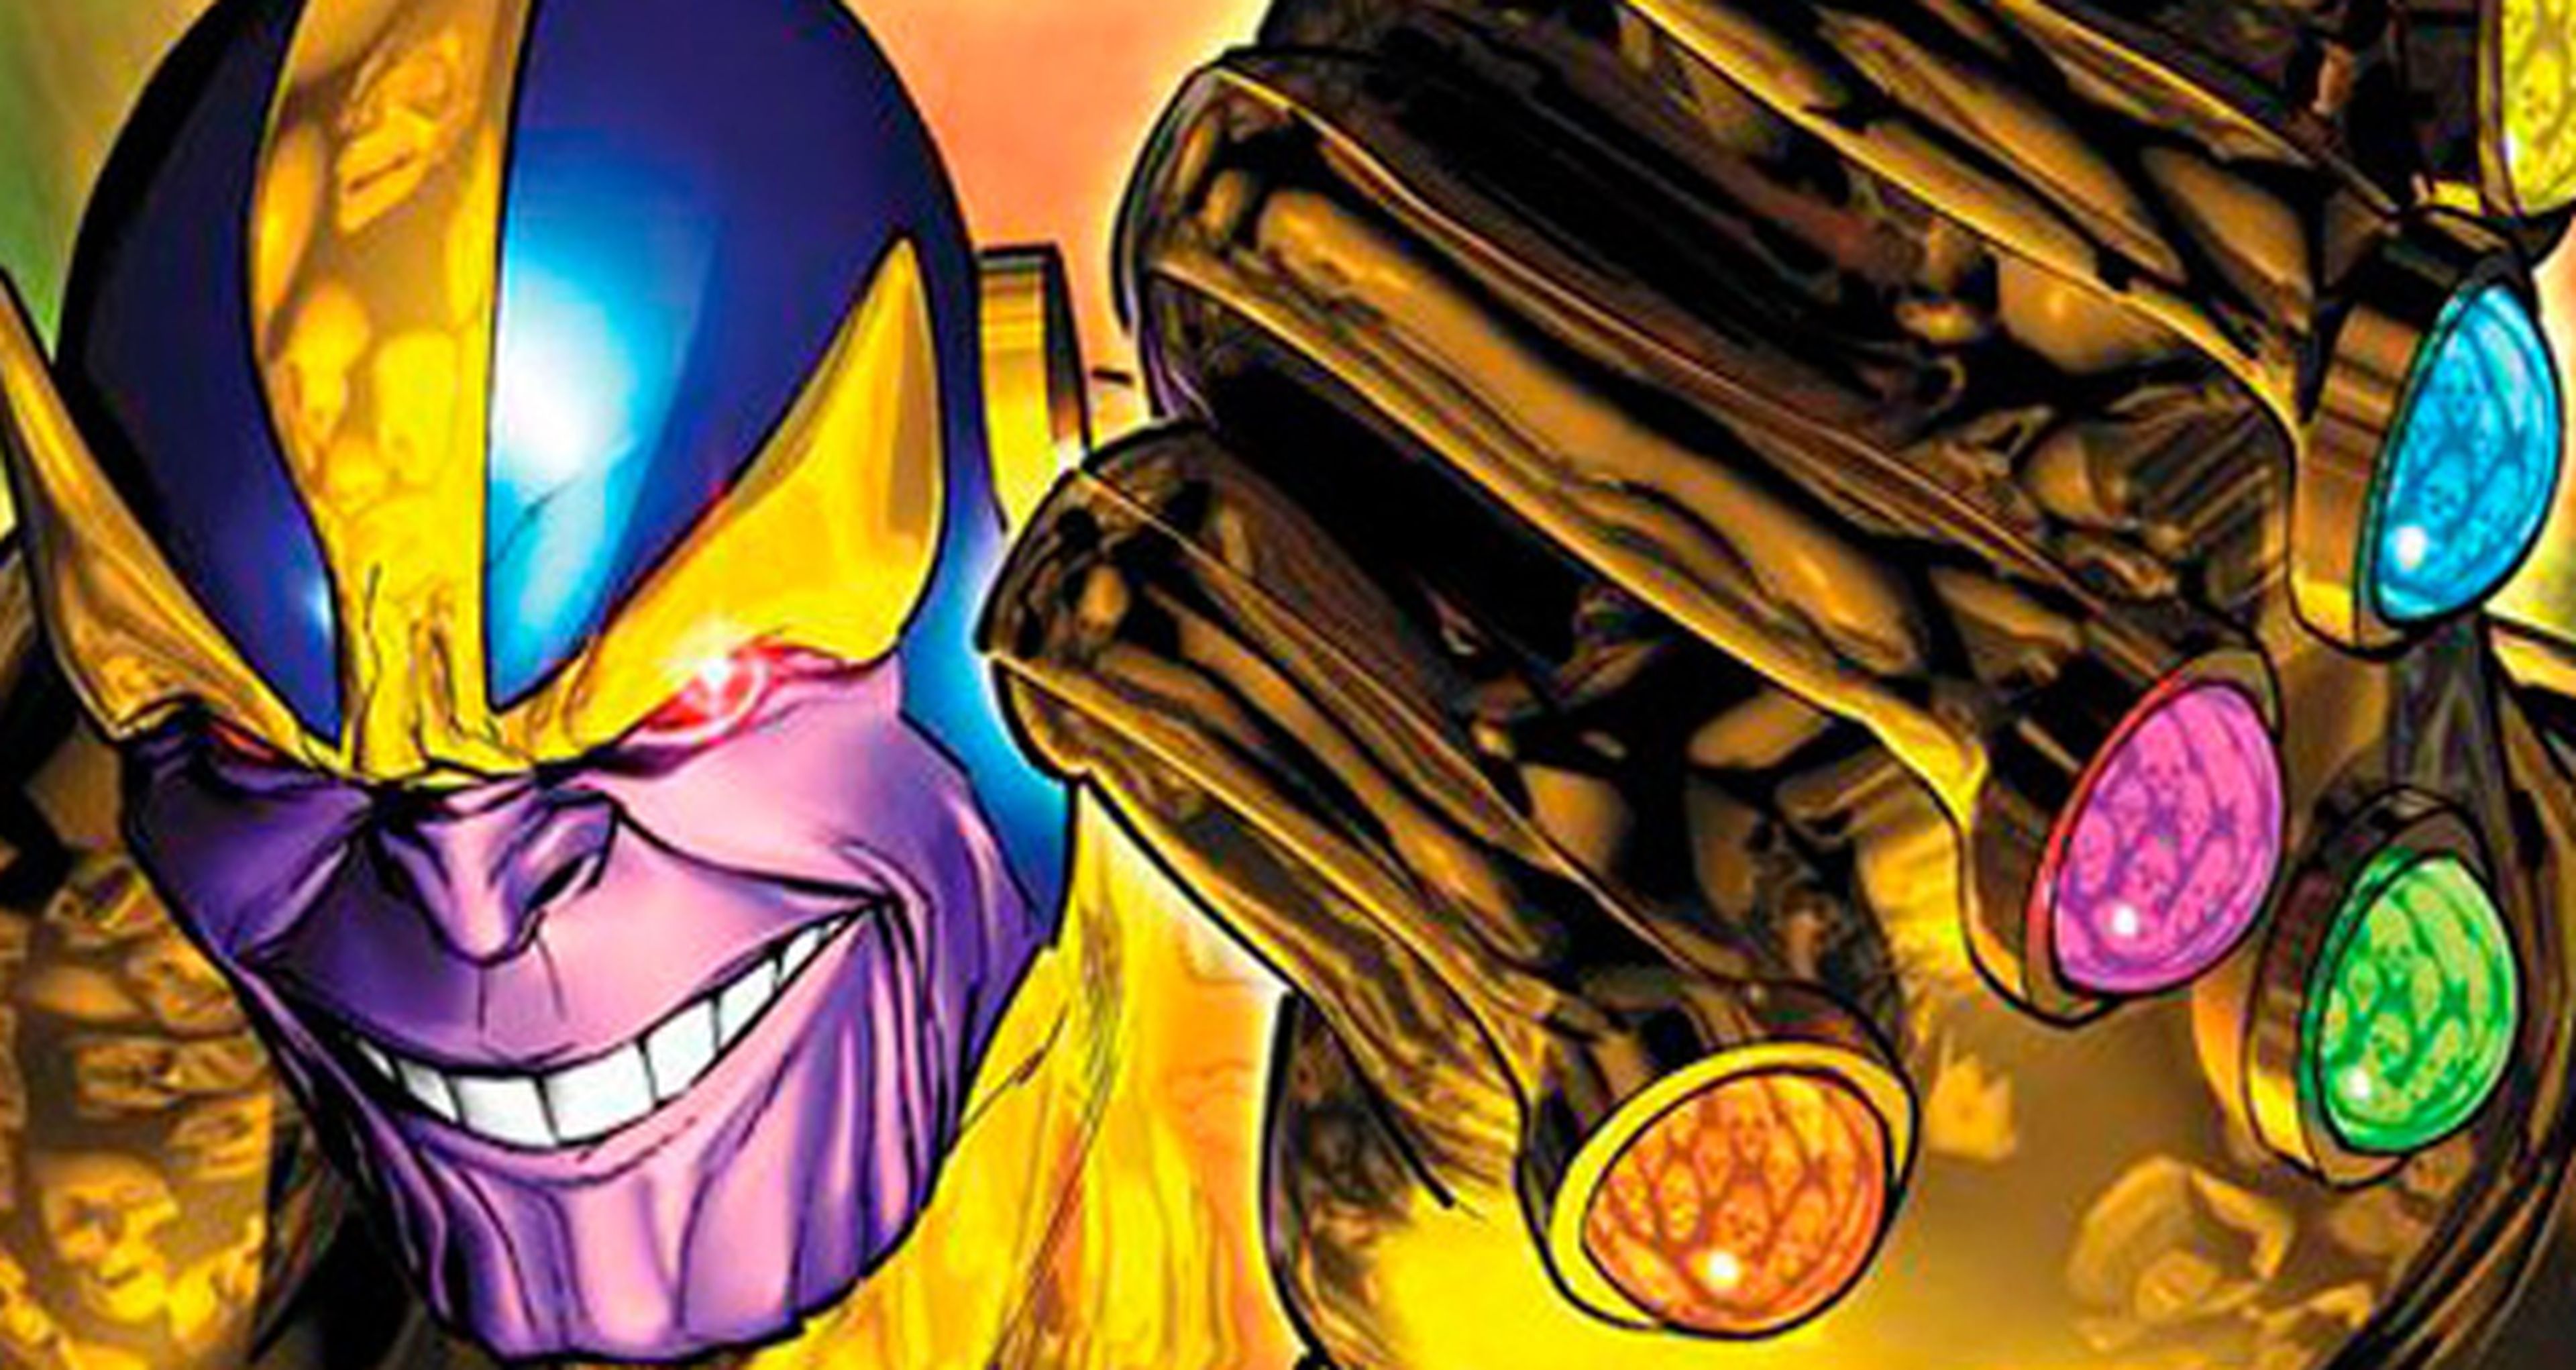 Josh Brolin habla del supervillano de Los Vengadores: Thanos